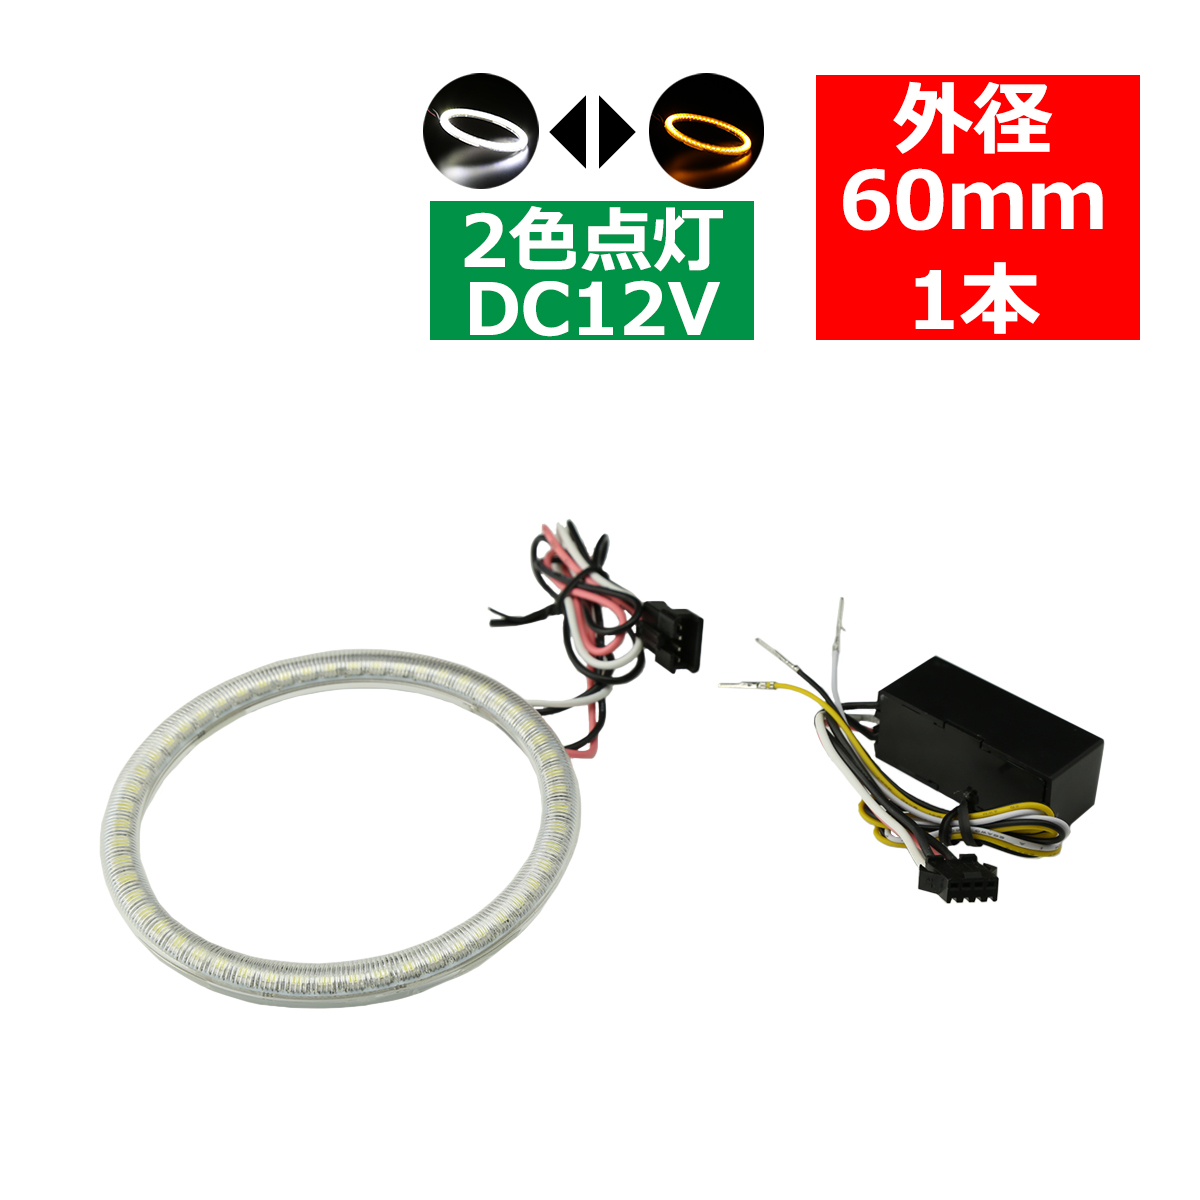 2色発光 LED イカリング ホワイト/アンバー カバー付き 外径60mm SMD LED OZ091